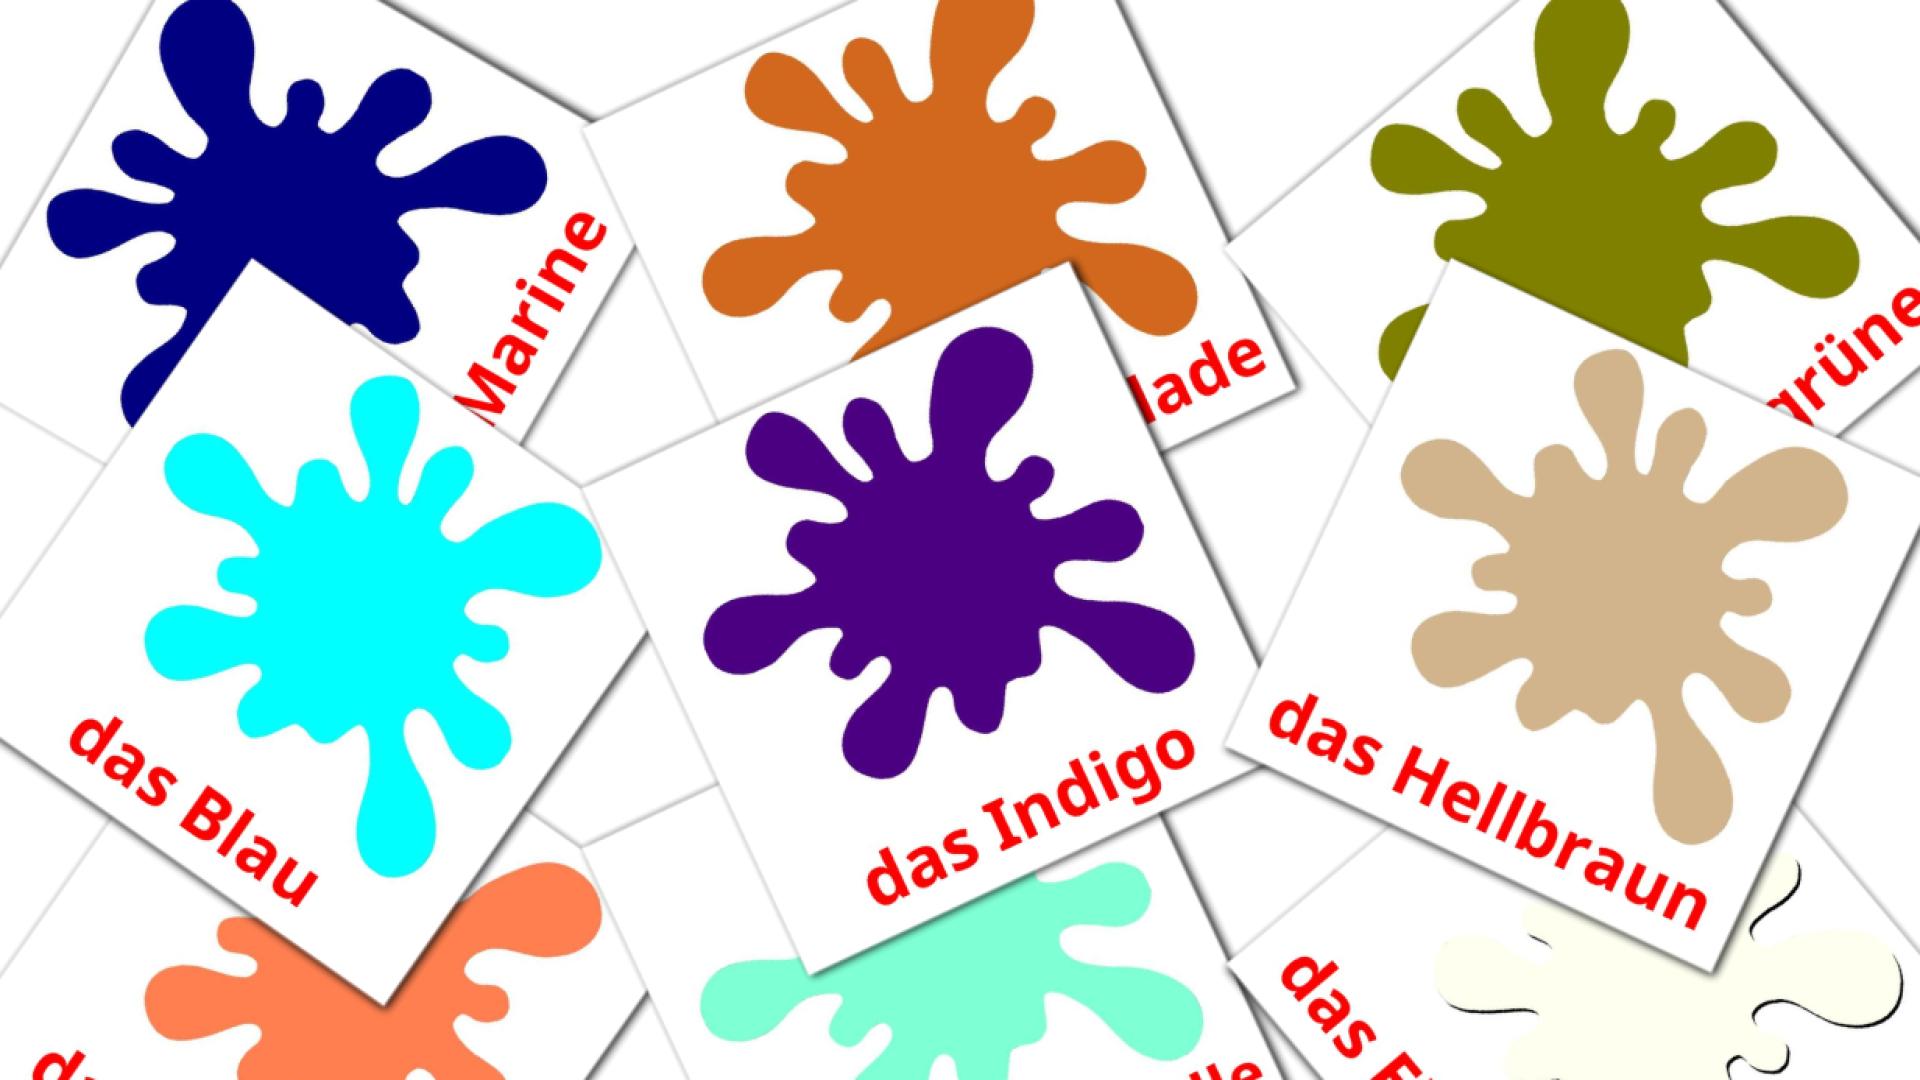 Cores secondarias - Cartões de vocabulário alemão